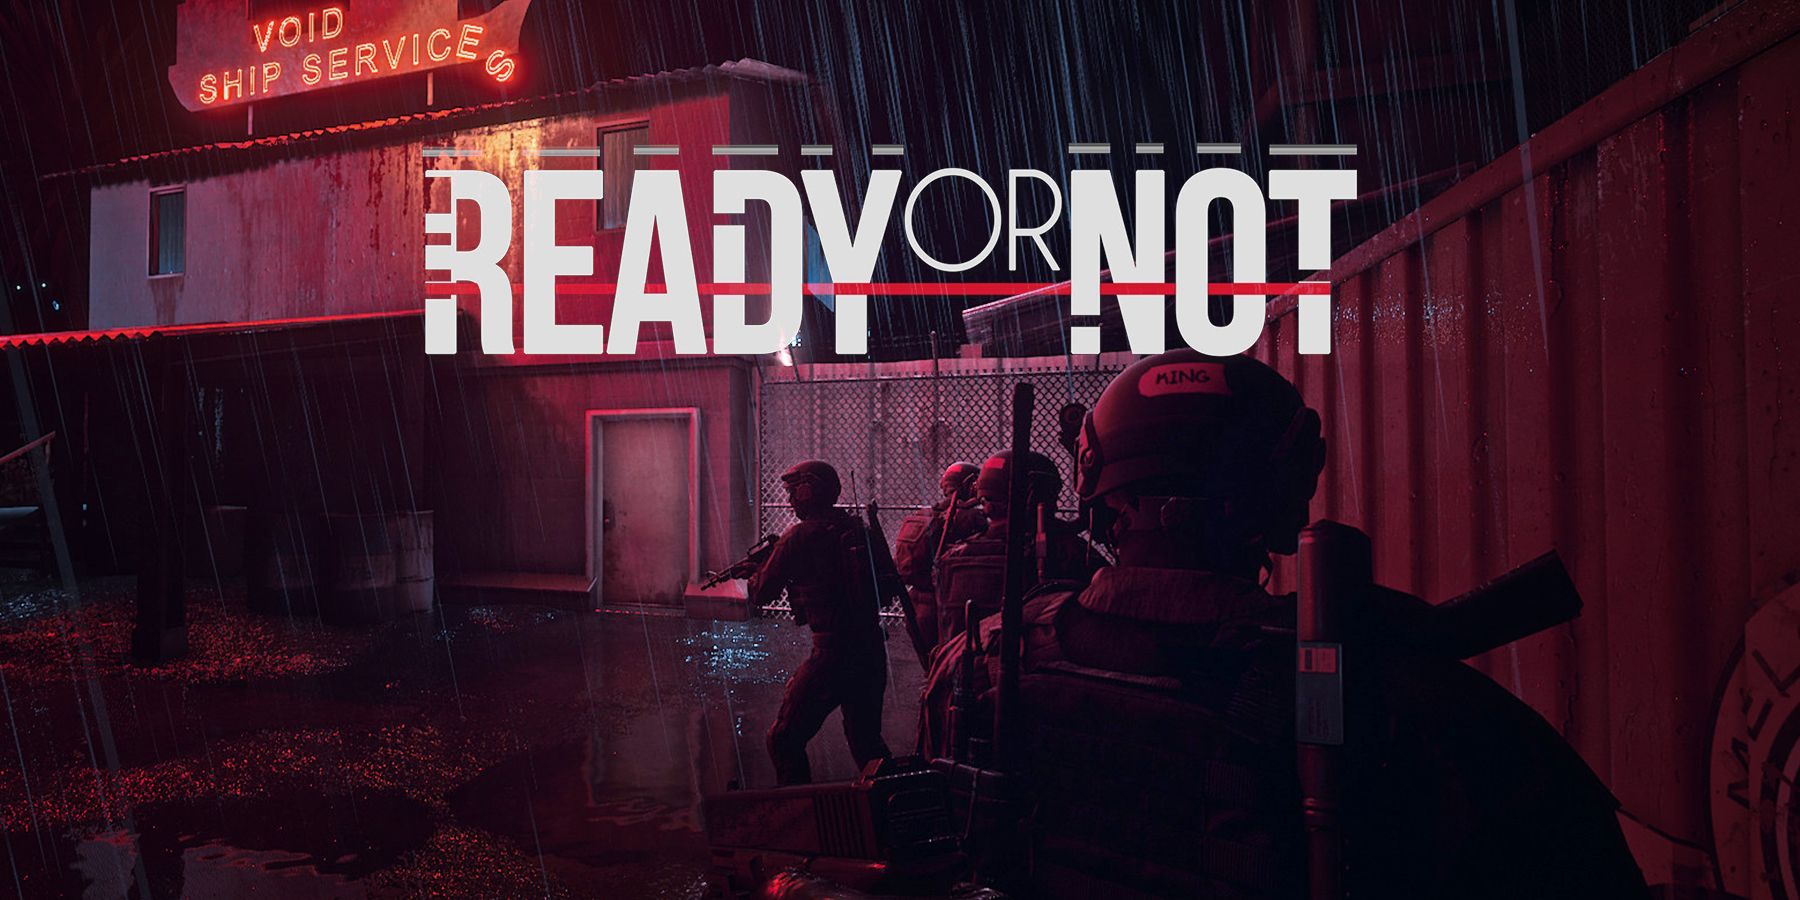 Captura de tela promocional do Ready or Not Void Ship Services de um ataque noturno com o logotipo do jogo